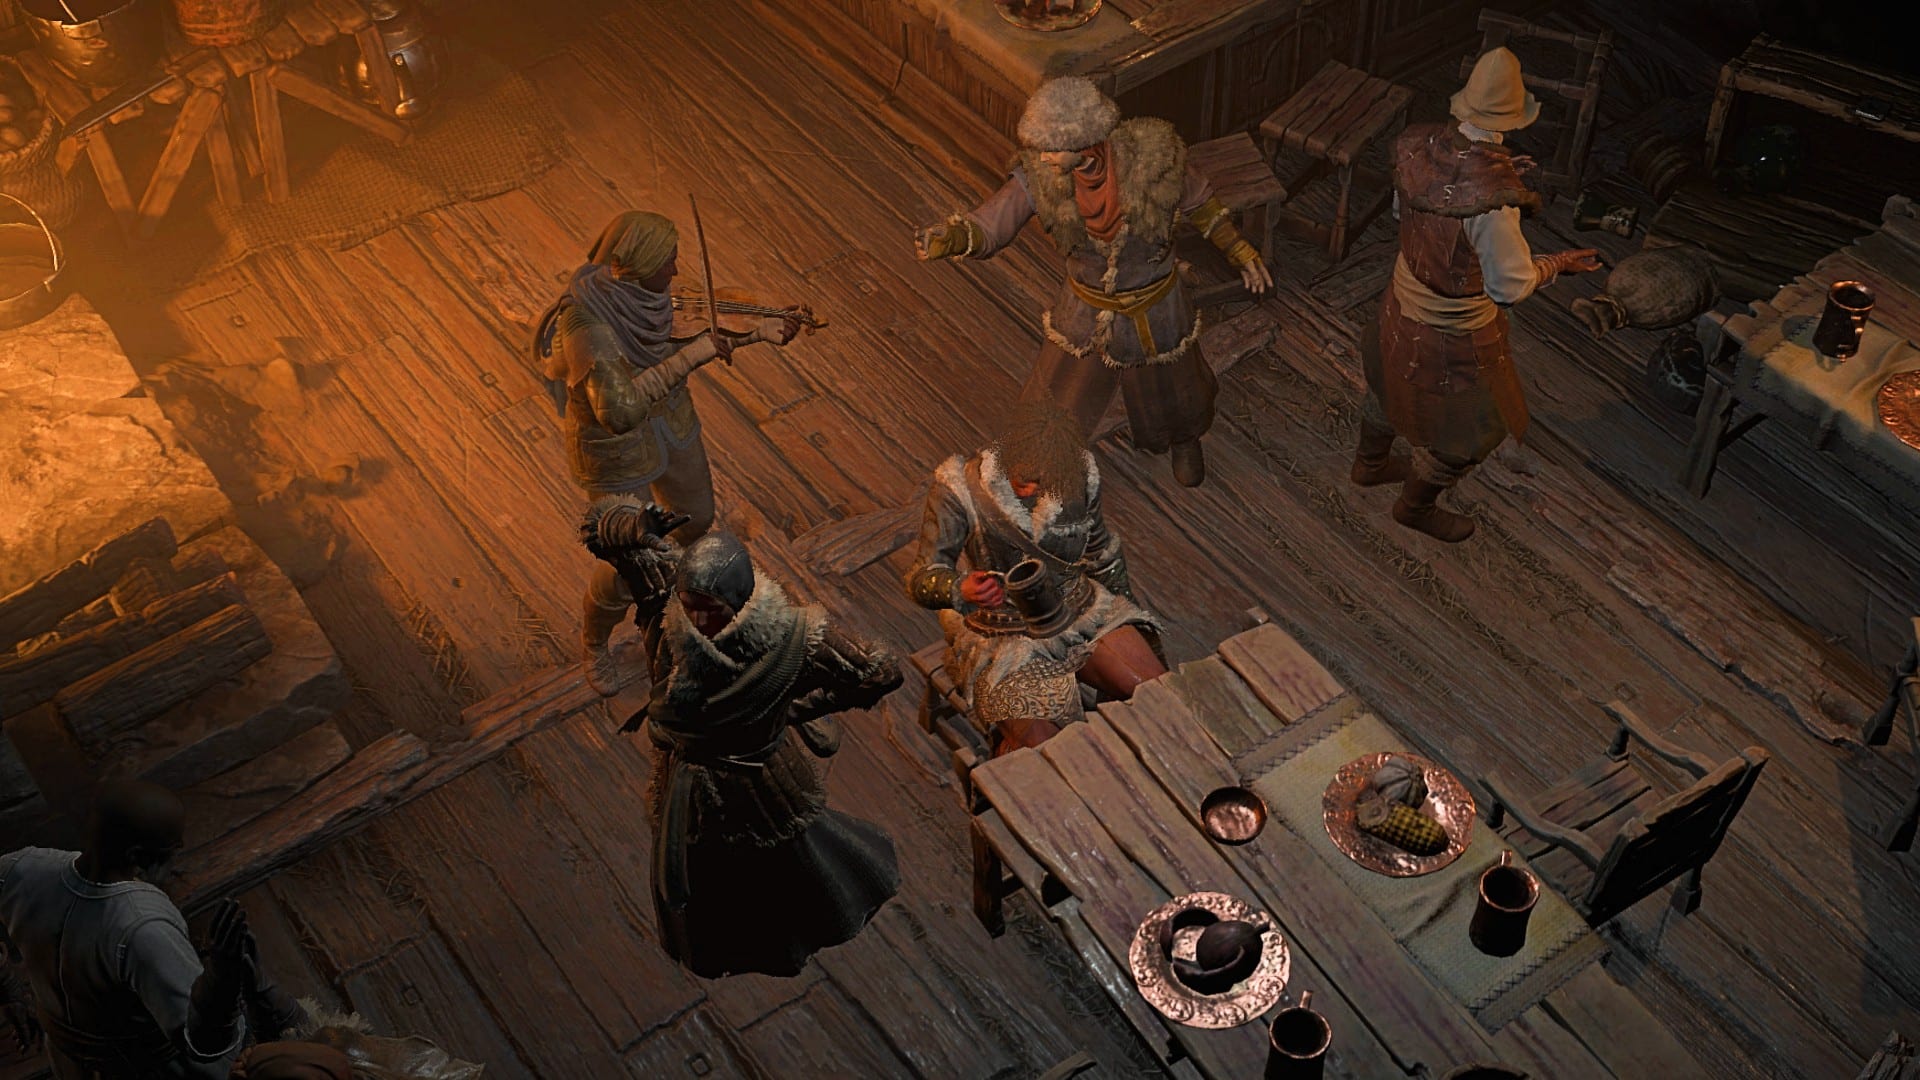 Les villageois dansent autour du joueur dans une taverne faiblement éclairée